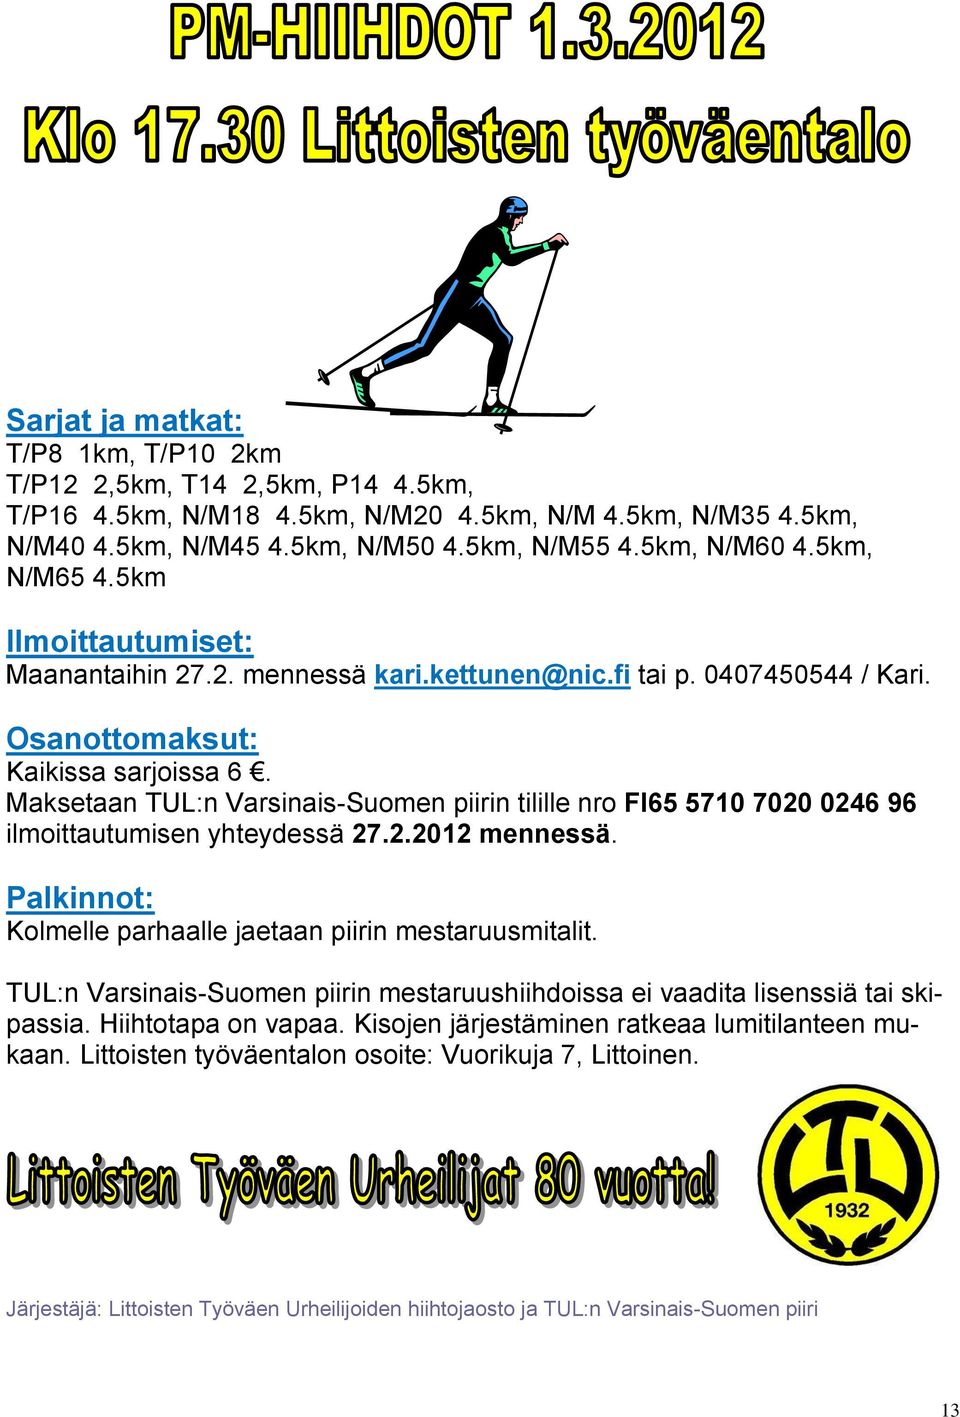 Maksetaan TUL:n Varsinais-Suomen piirin tilille nro FI65 5710 7020 0246 96 ilmoittautumisen yhteydessä 27.2.2012 mennessä. Palkinnot: Kolmelle parhaalle jaetaan piirin mestaruusmitalit.